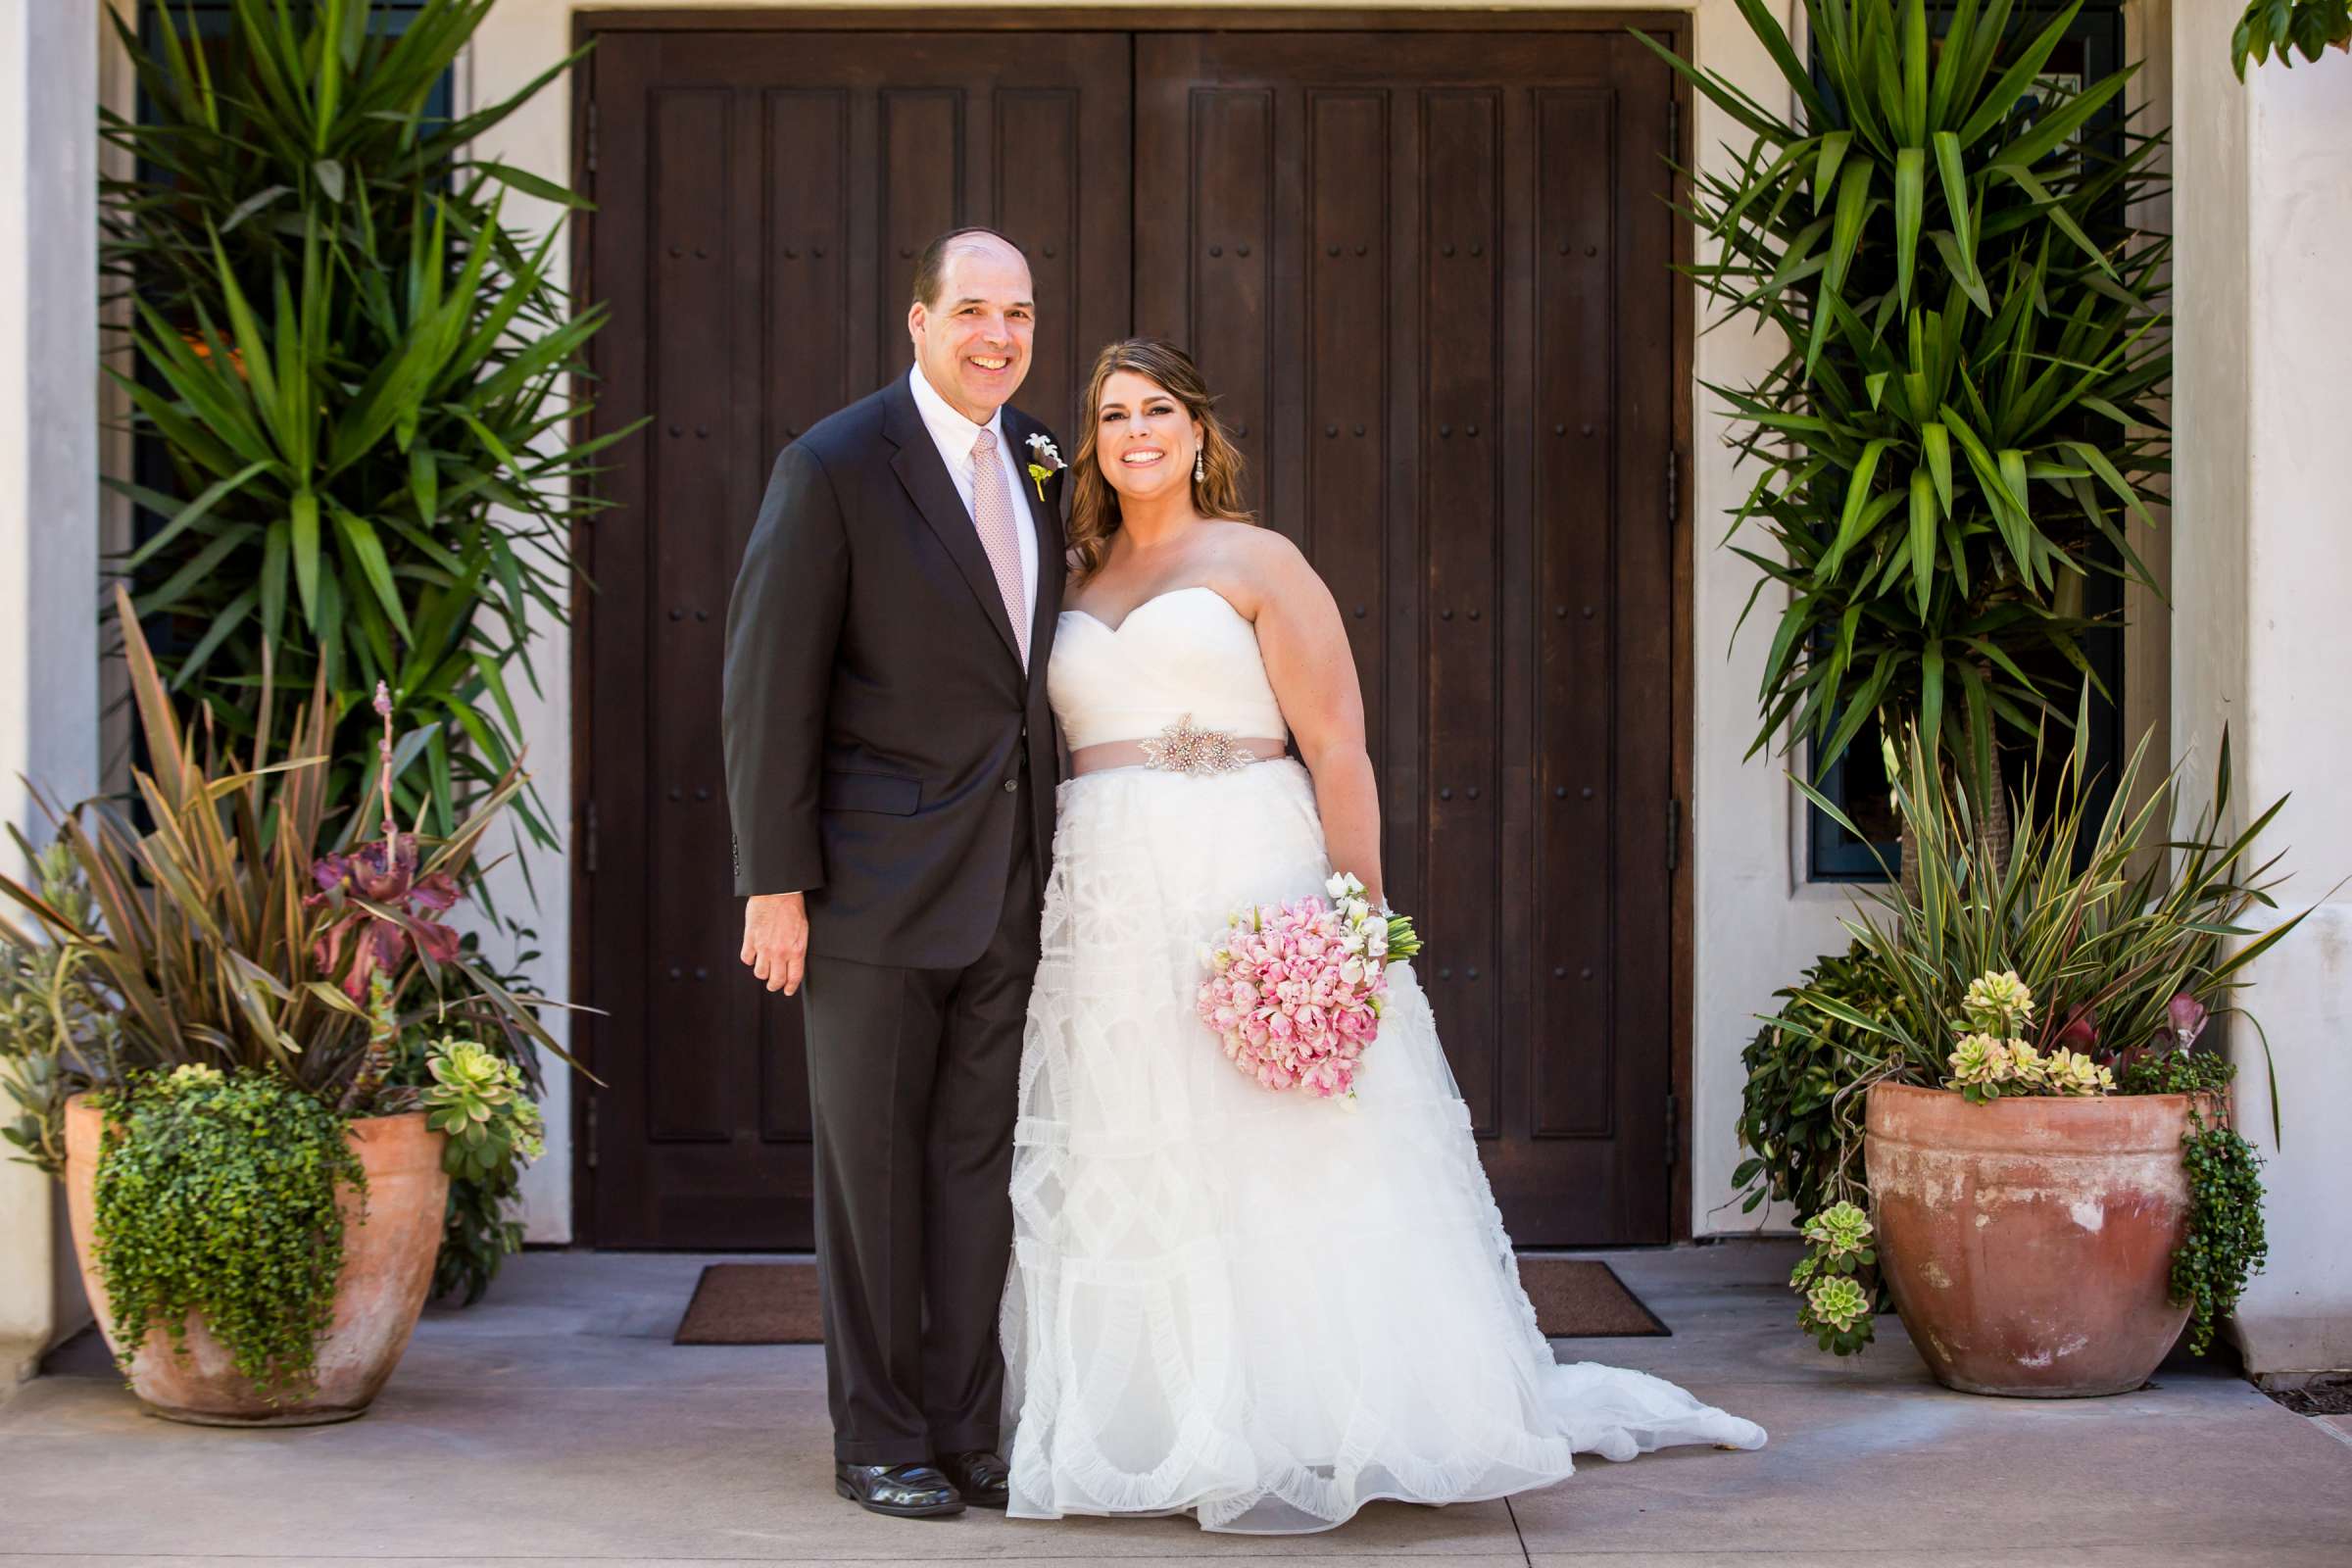 Rancho Santa Fe Golf Club Wedding coordinated by Monarch Weddings, Carolynn and Jon Wedding Photo #60 by True Photography